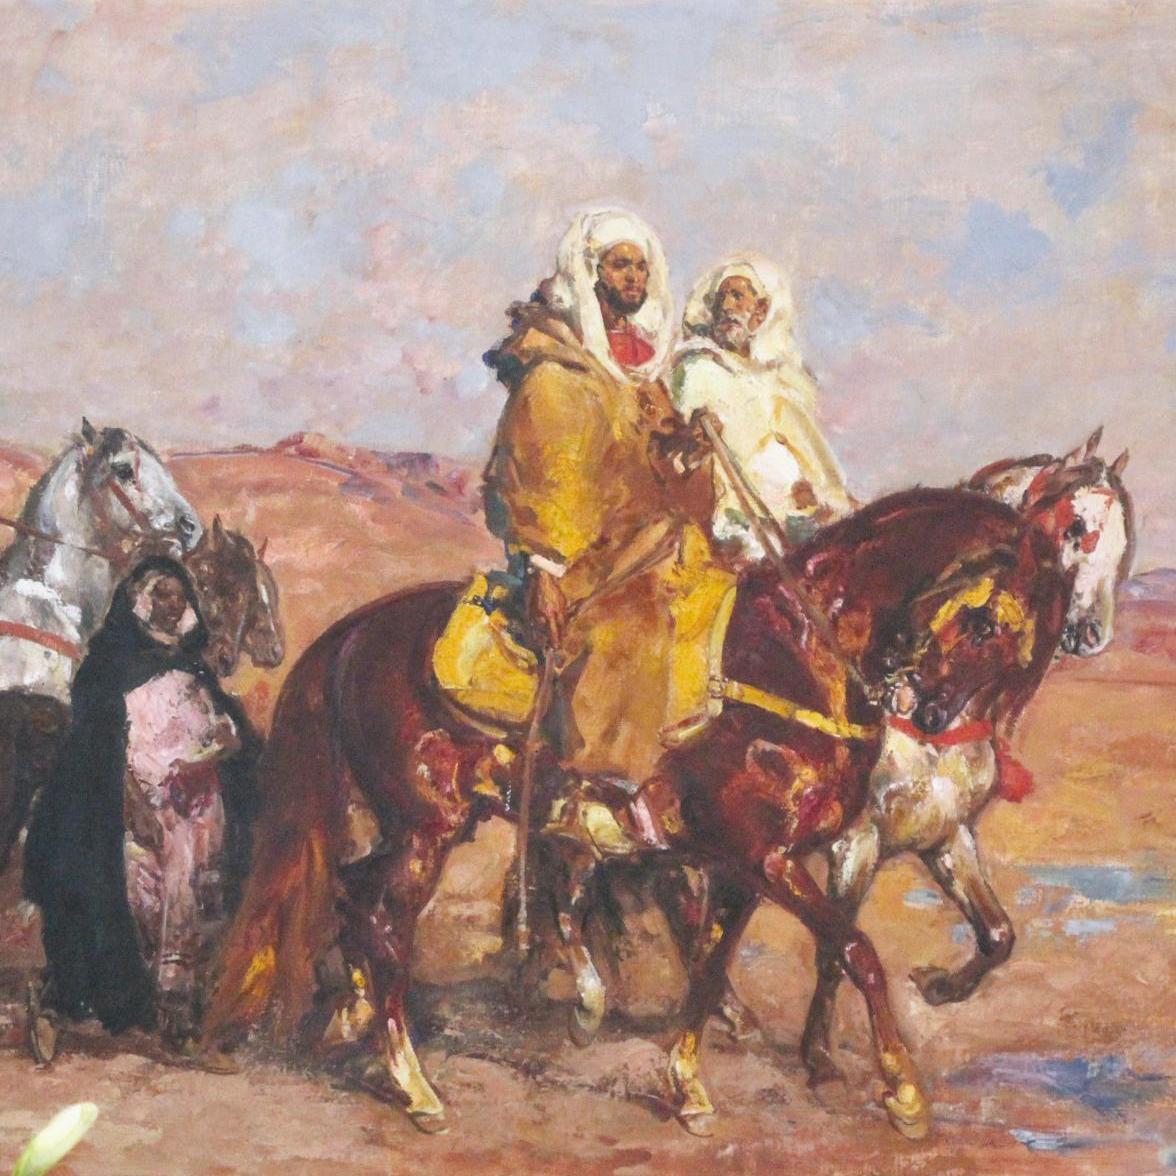 Les voyageurs marocains de Rousseau